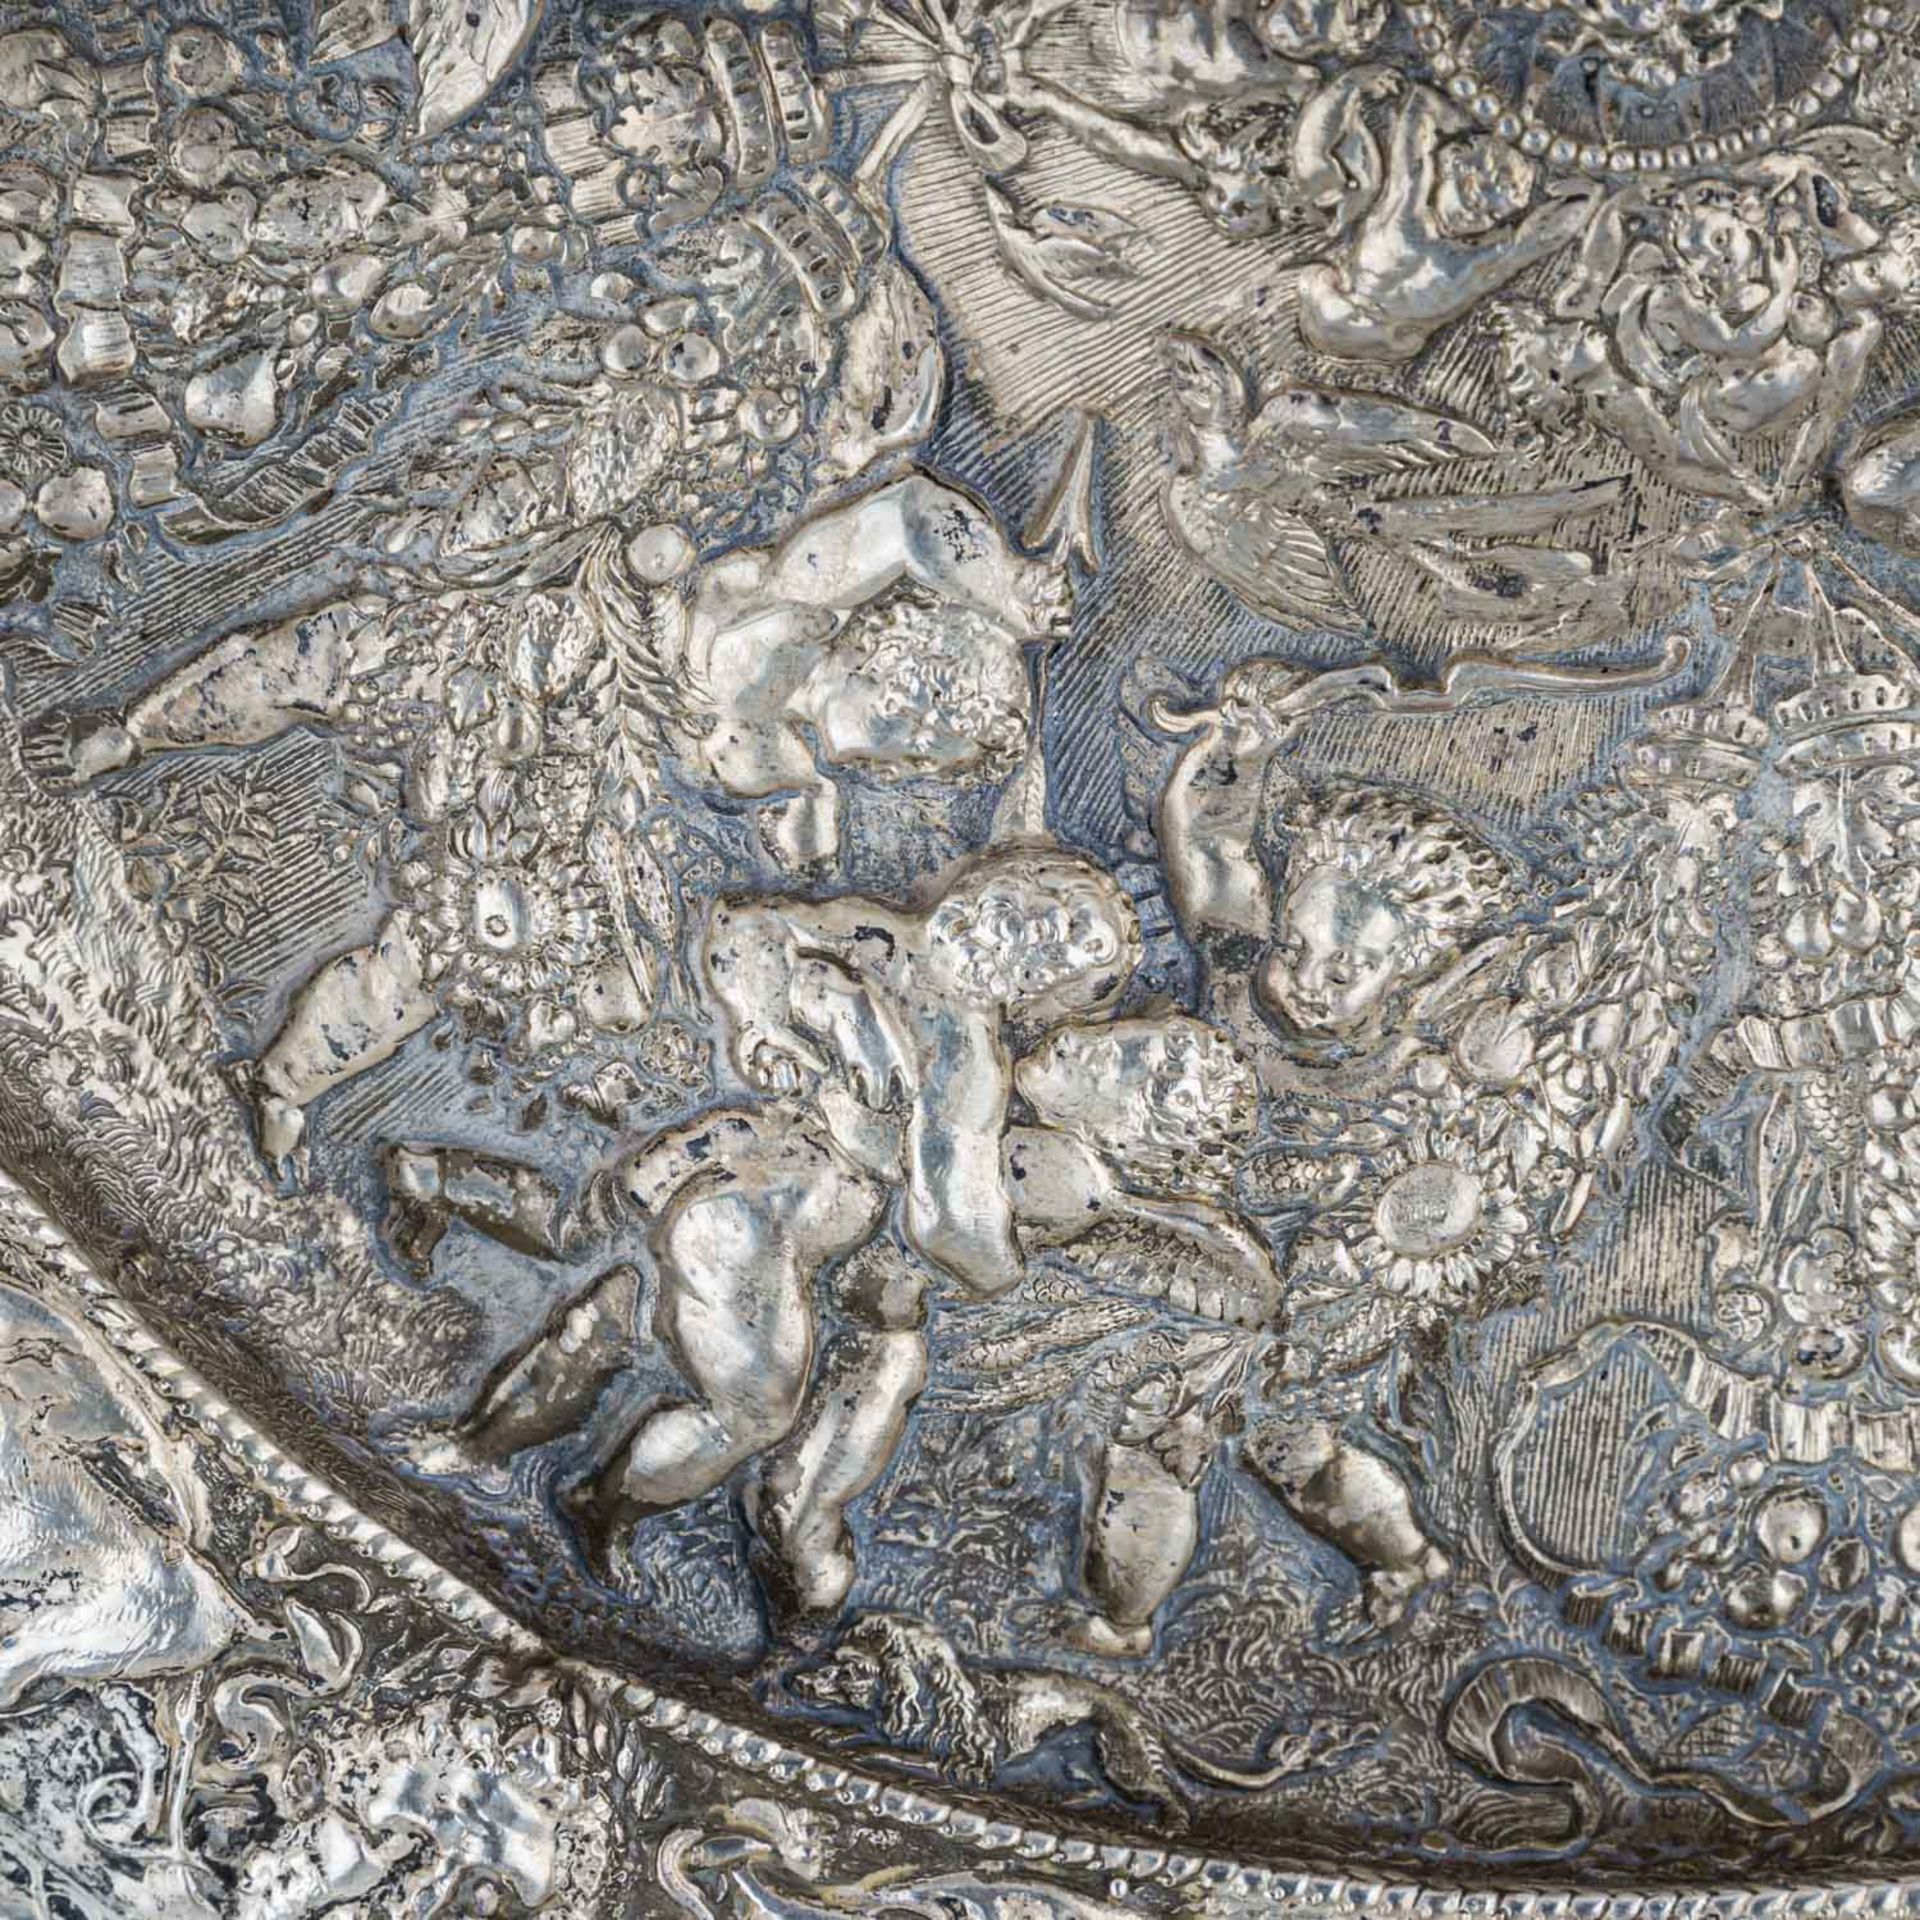 Historismusplatte, 20. Jh.gegossen, versilbert, üppiges Reliefdekor mit Putten, Wandhalterung - Bild 4 aus 6